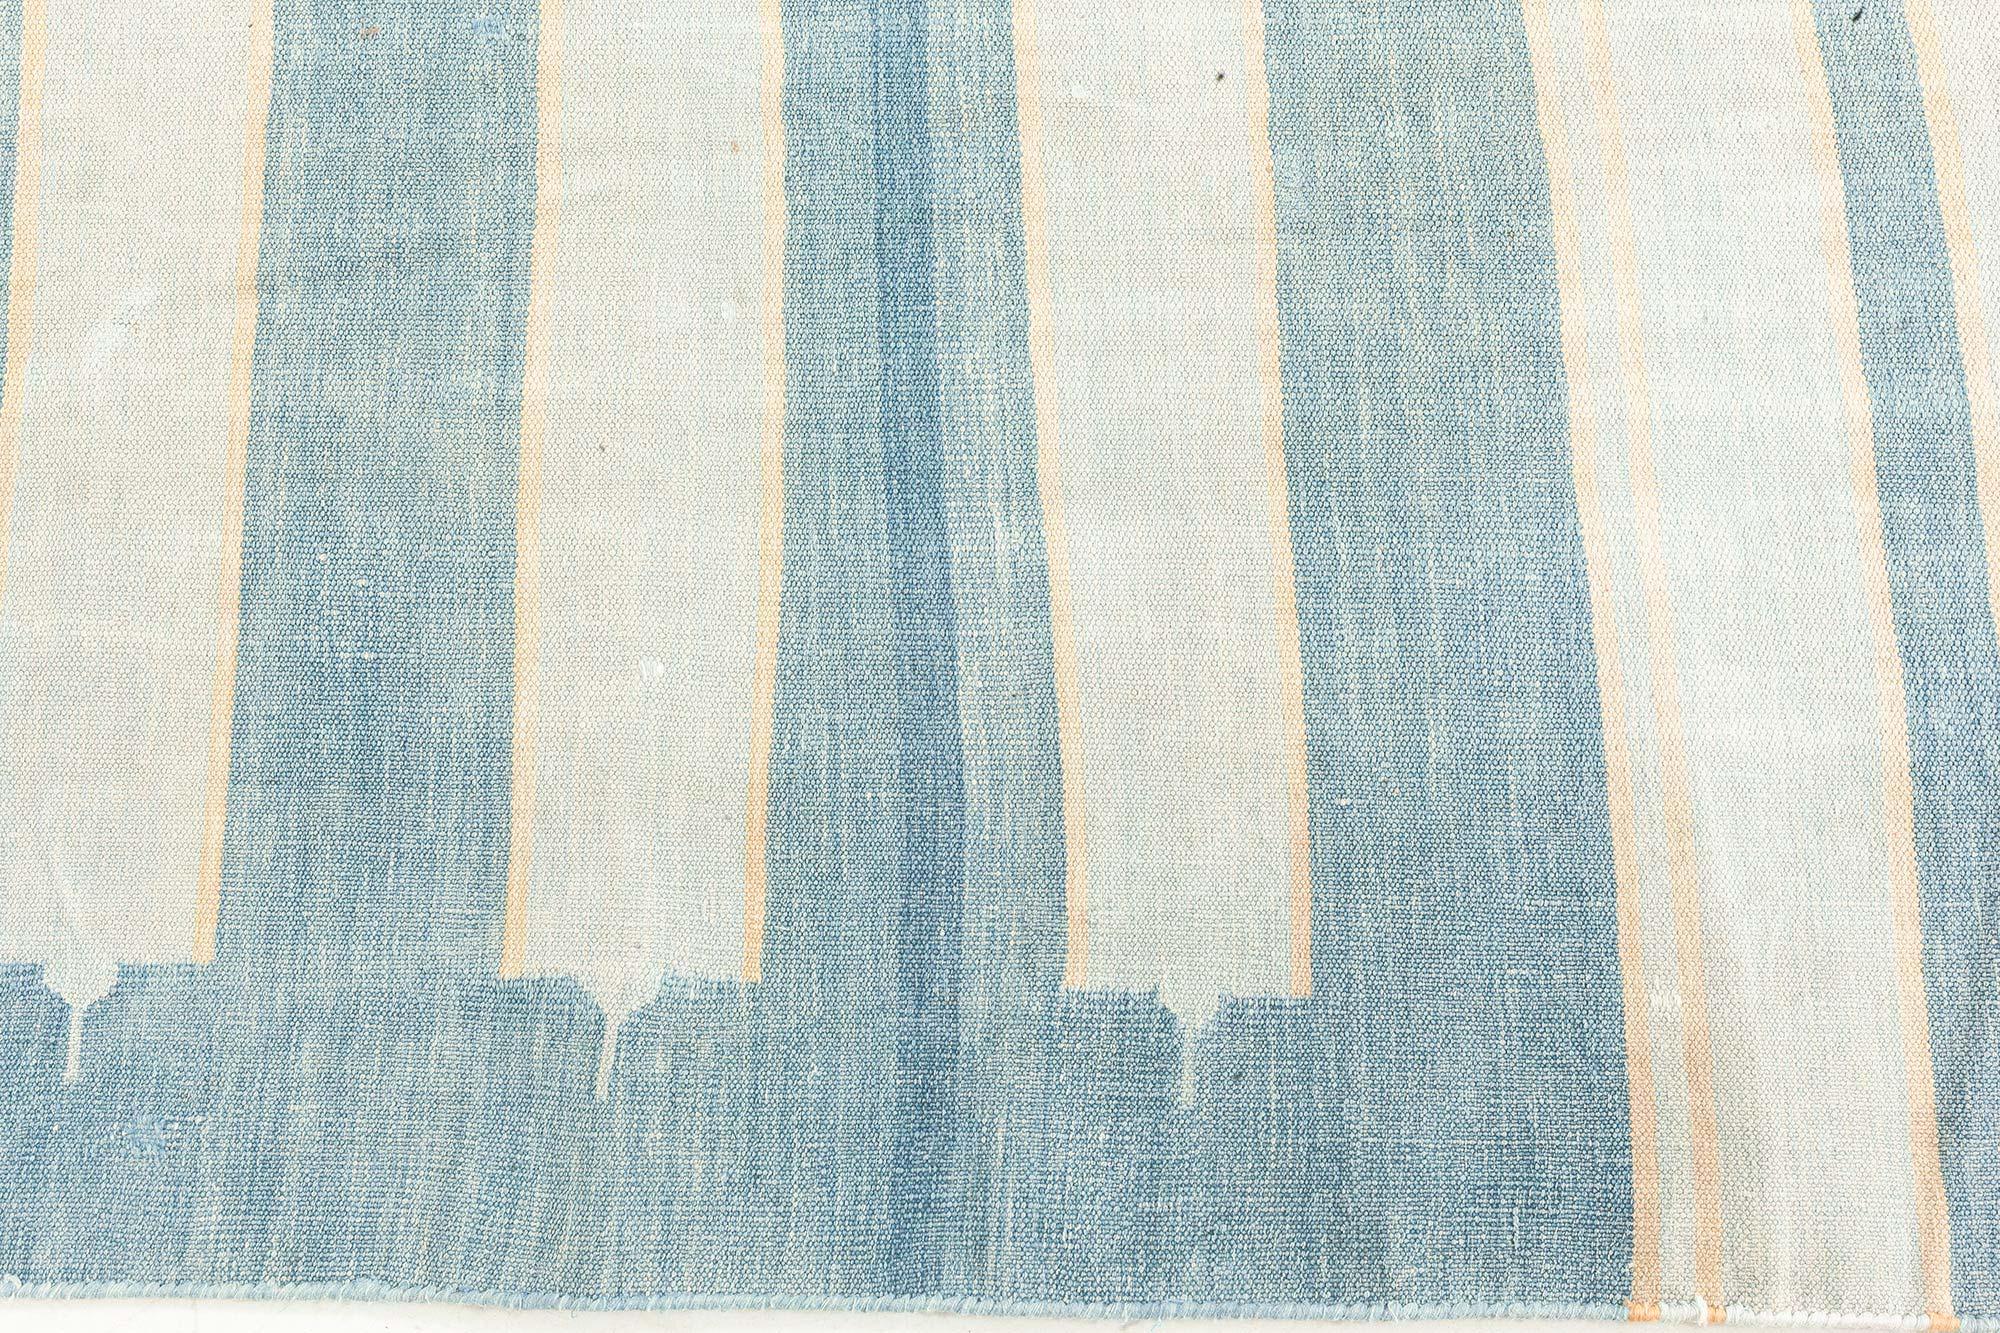 Vintage Indian Dhurrie striped blue beige ivory rug by Doris Leslie Blau
Size: 6'4